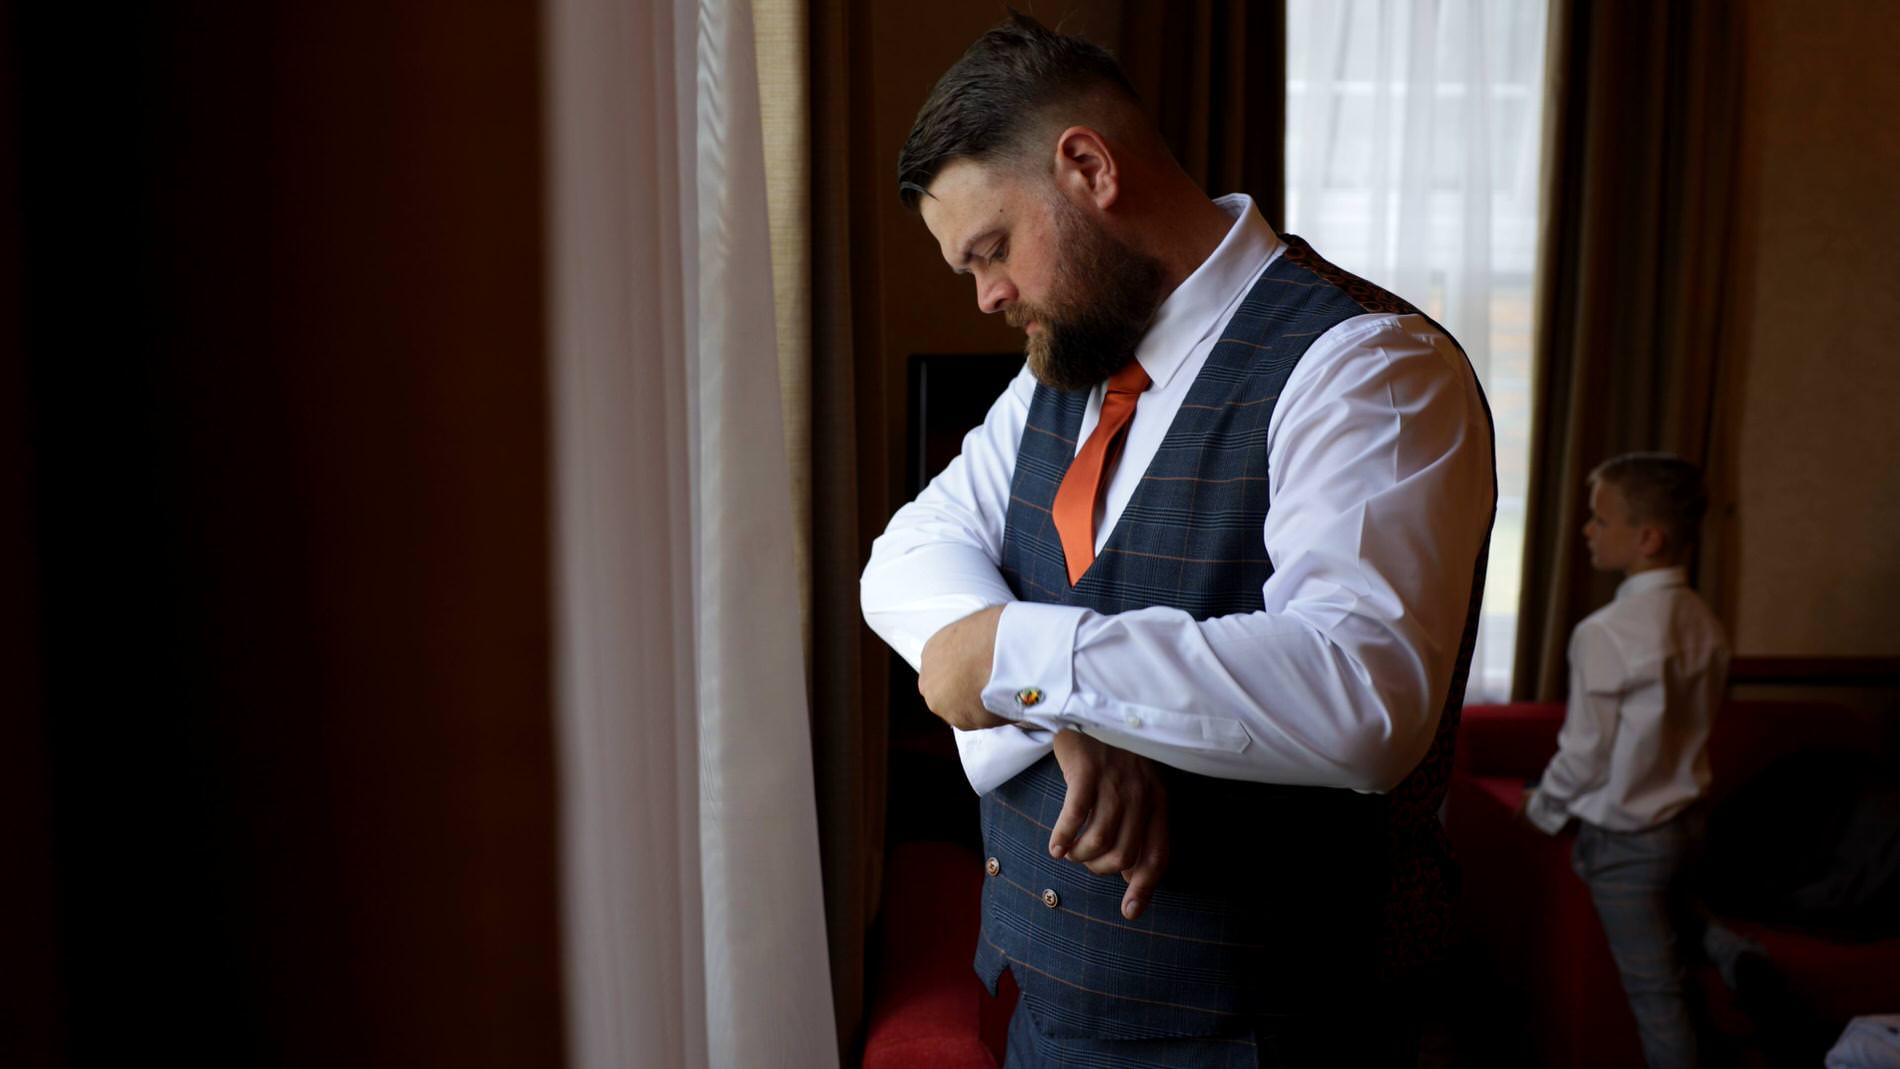 groom fastens his cufflinks before wedding